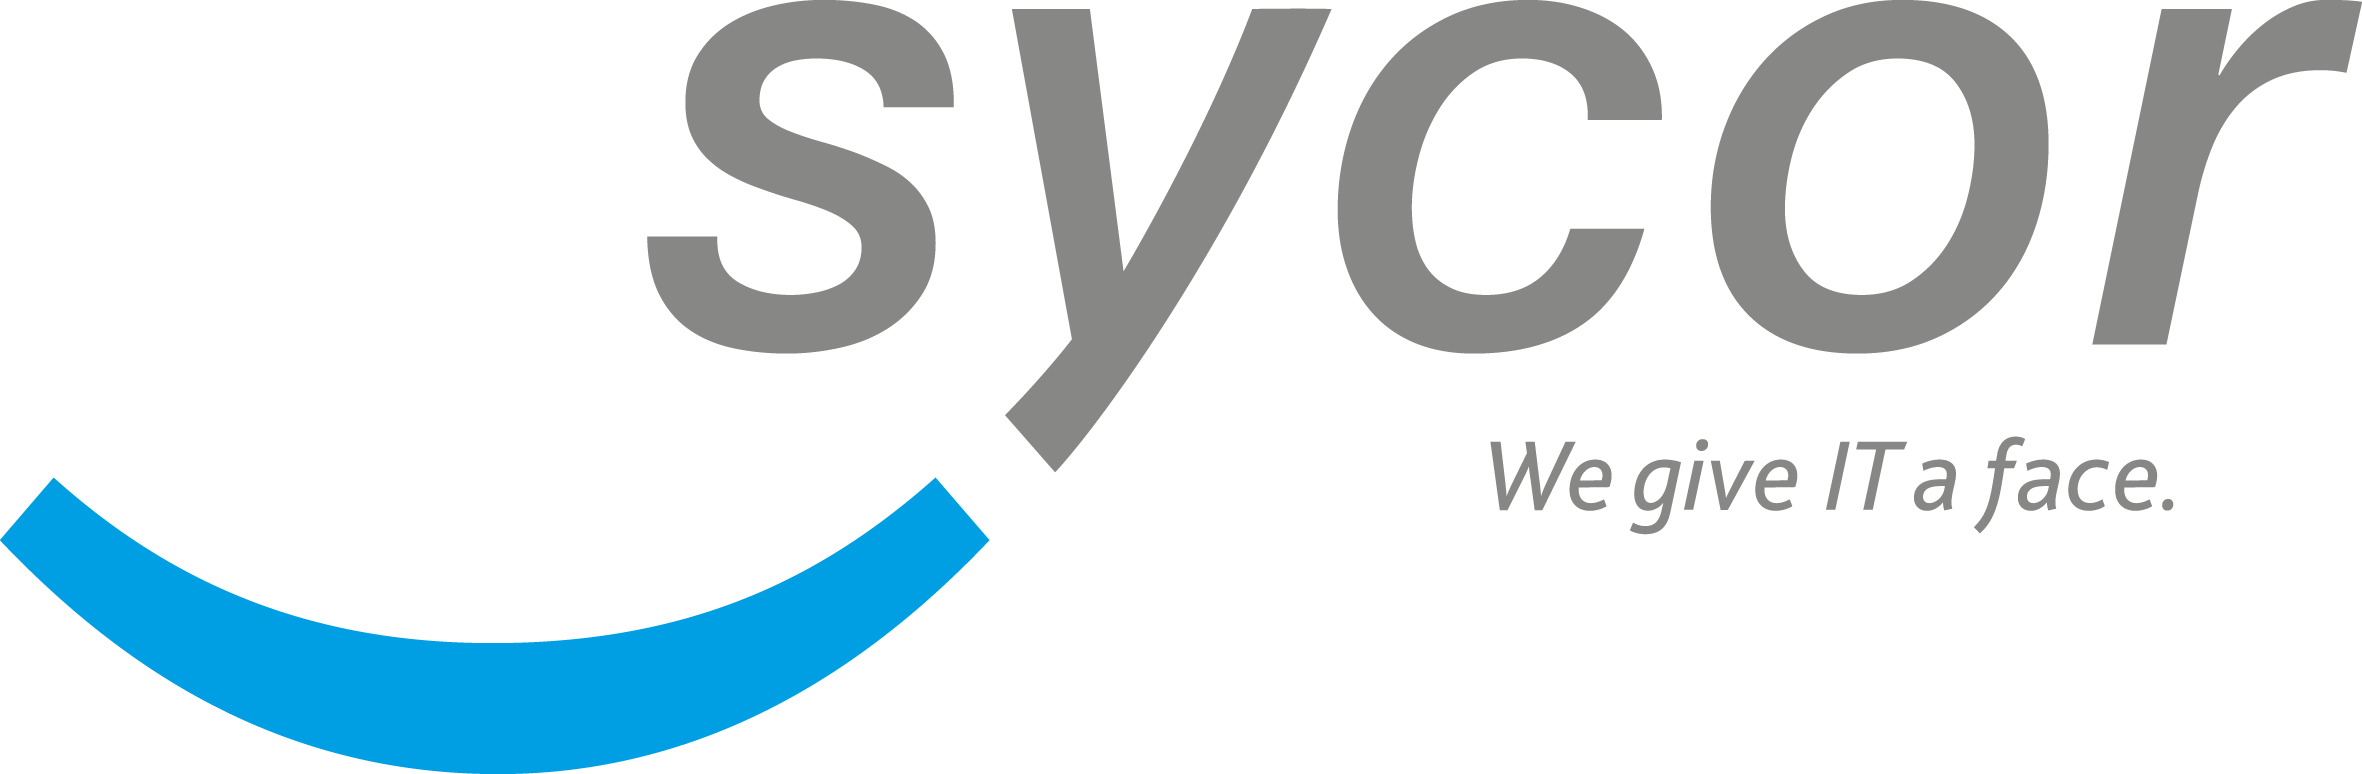 SycorAmericasITsvs Logo